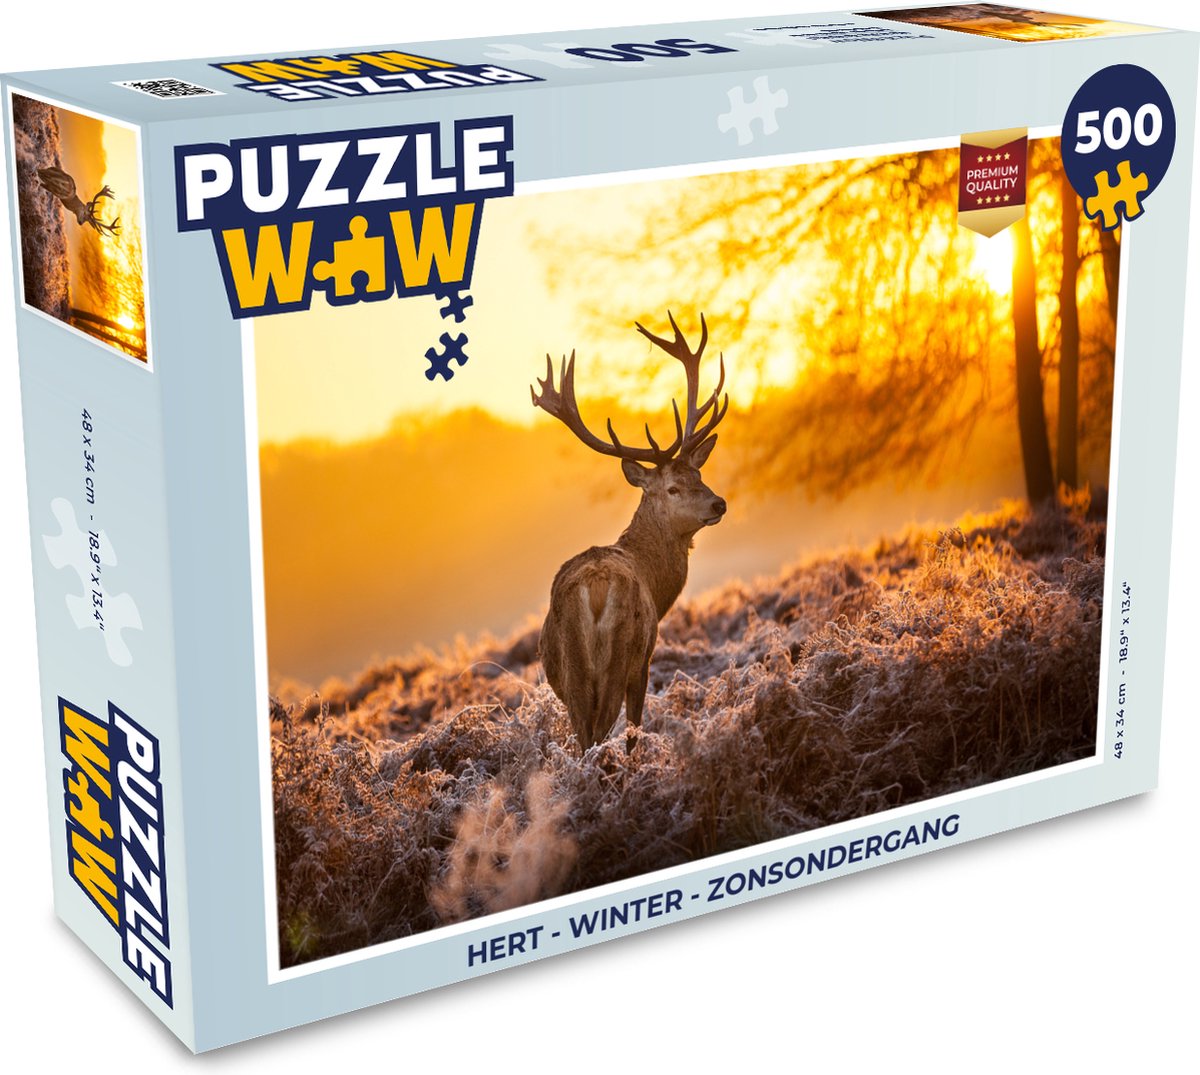 Puzzel Hert - Winter - Zonsondergang - Legpuzzel - Puzzel 500 stukjes |  bol.com